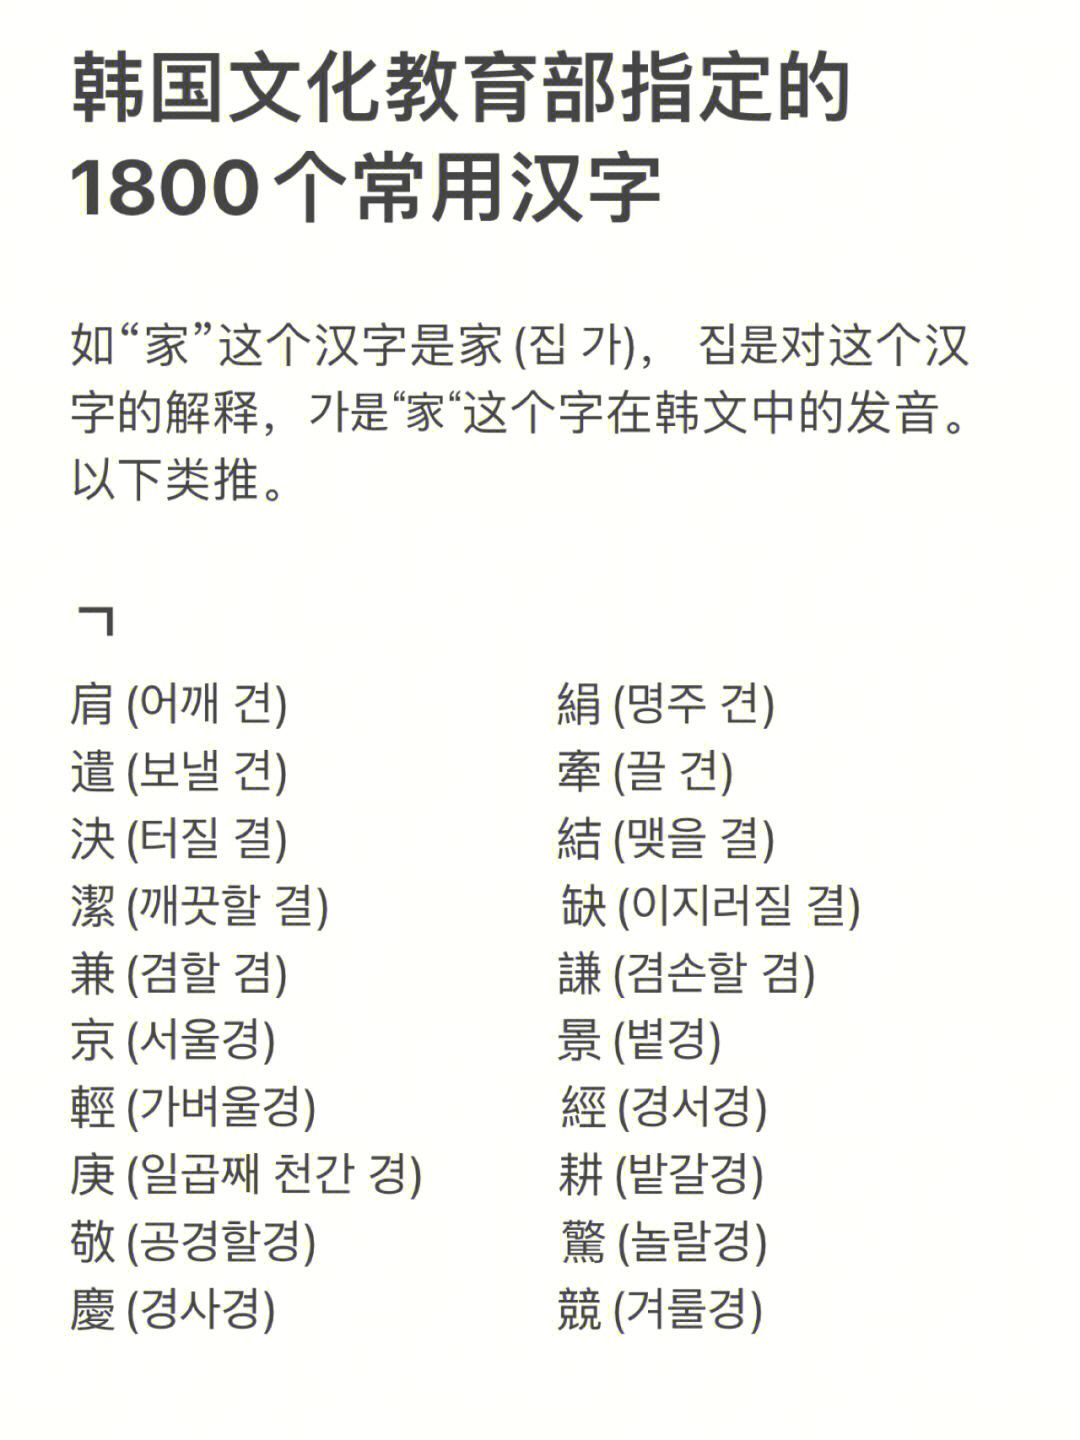 75), 38是对这个汉字的解释,75是家这个字在韩文中的发音